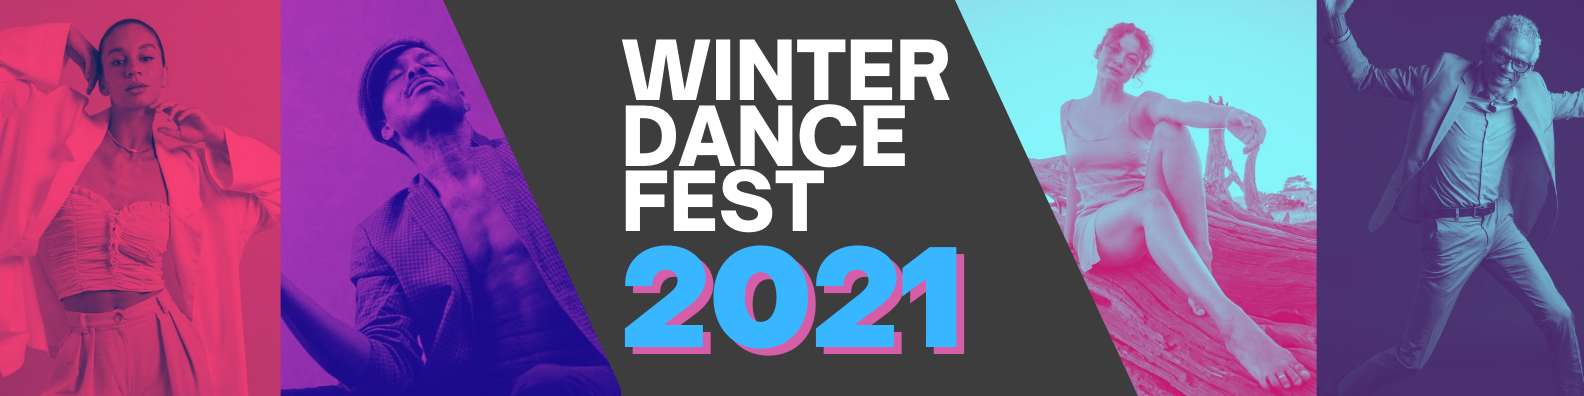 WinterDance Fest – Tannery World Dance & Cultural Center